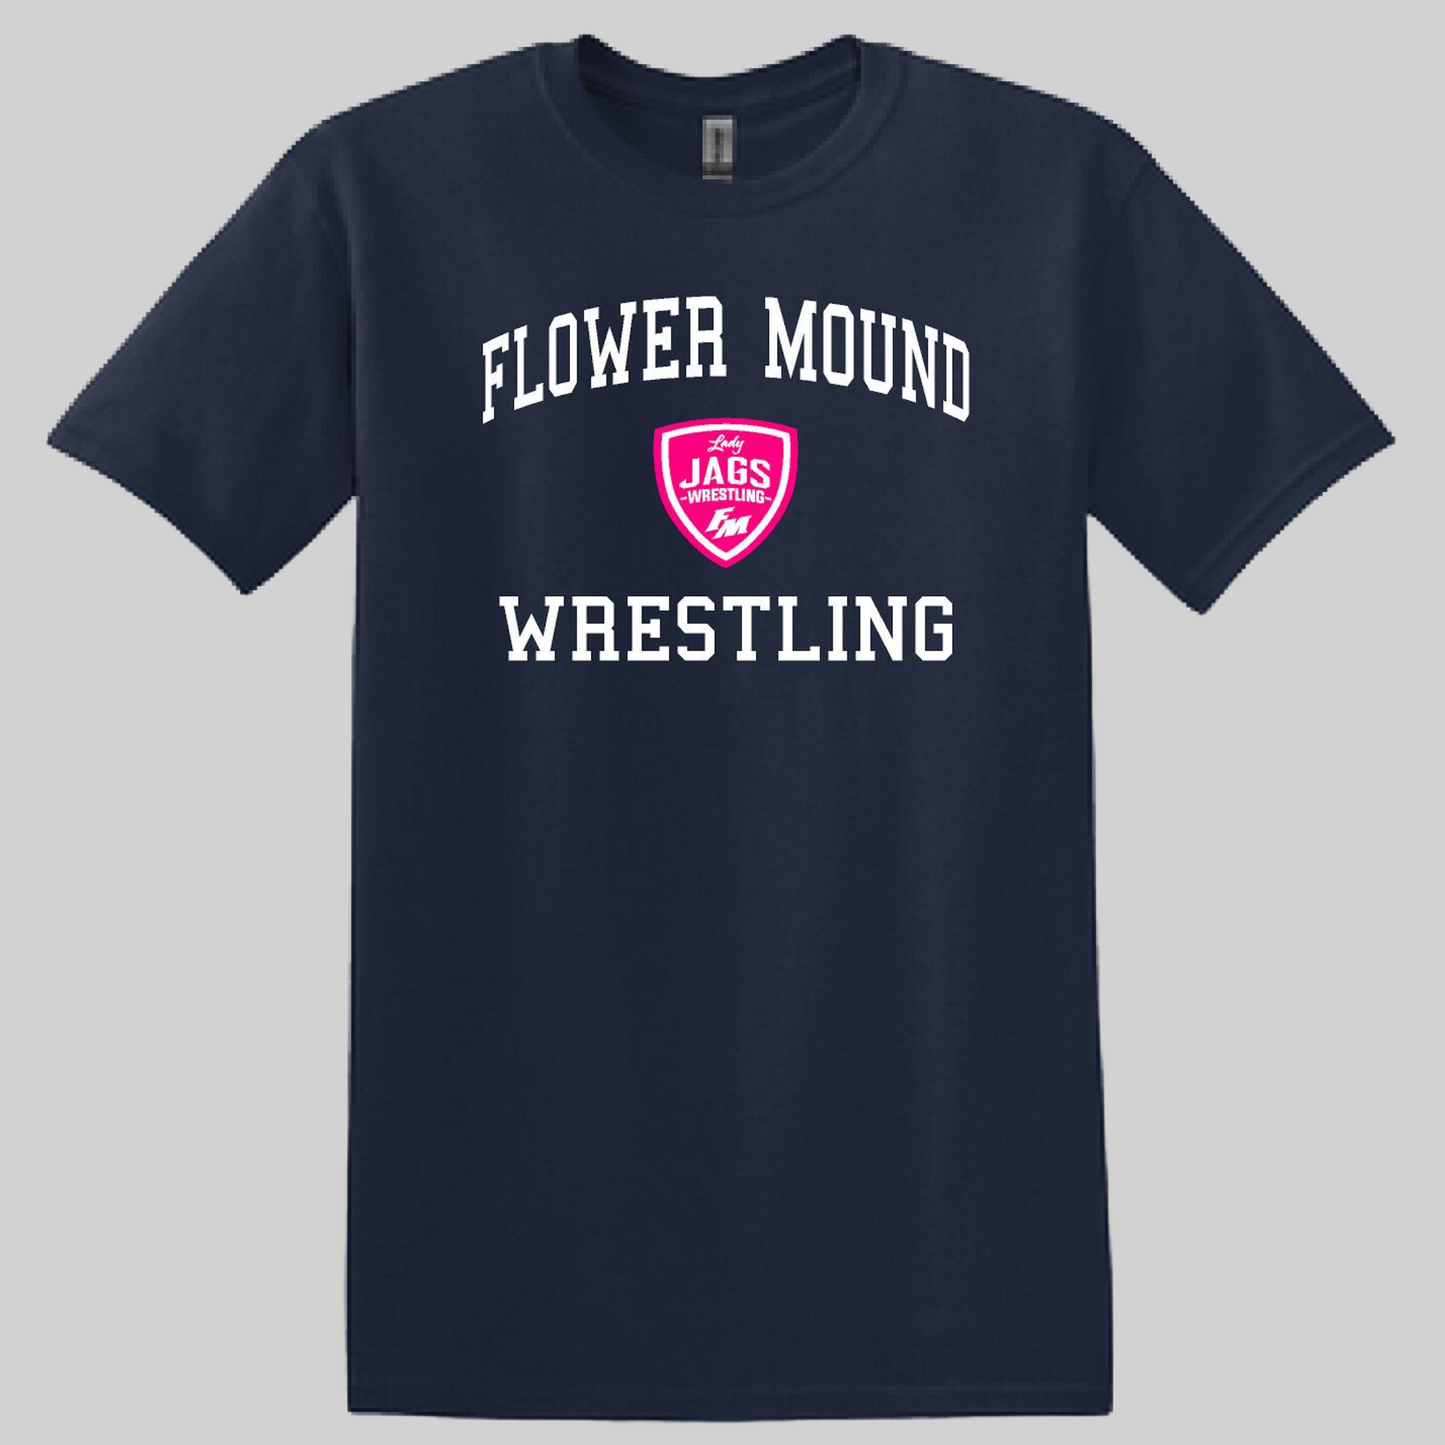 Flower Mound High School Girls Wrestling 23-4